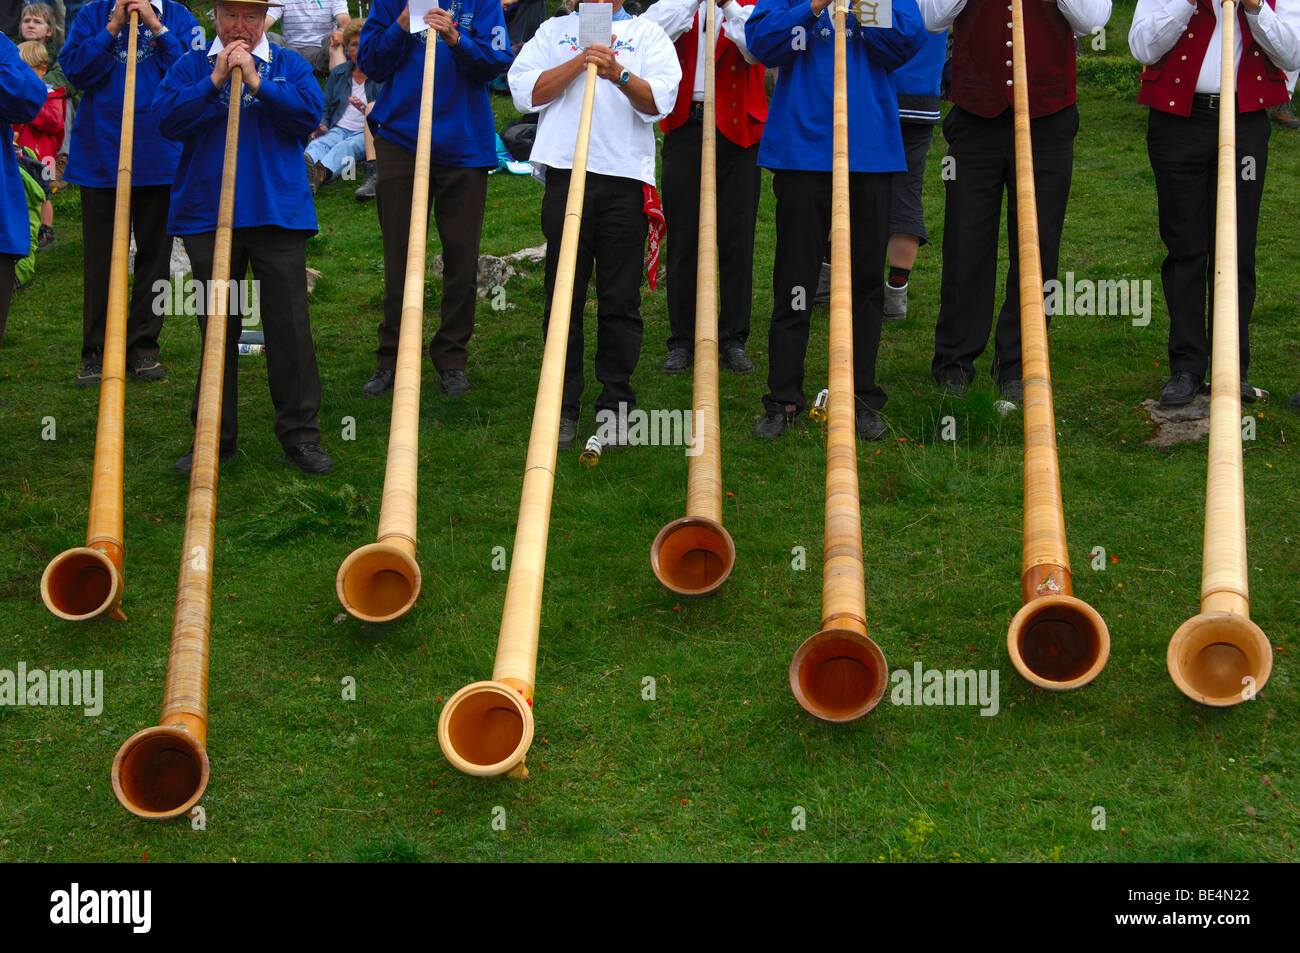 Alphorns, alphorn musician and spectators at a Swiss folk festival, Valais, Switzerland Stock Photo